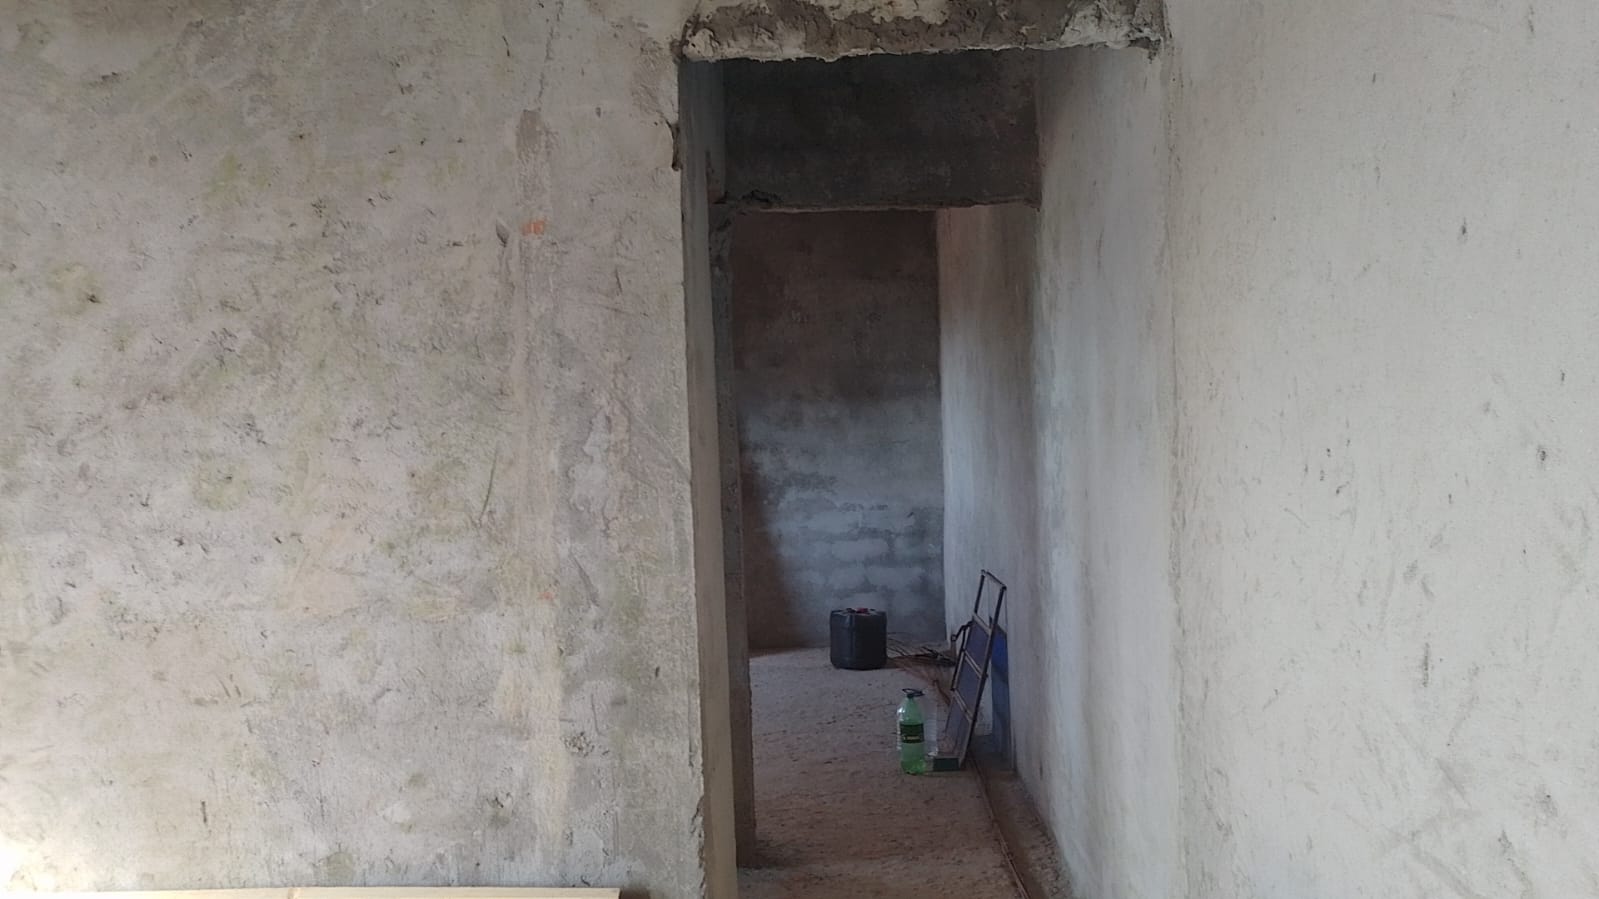 Chácara com casa em faze de acabamento localizada na cidade de Toledo - MG | Código 1076